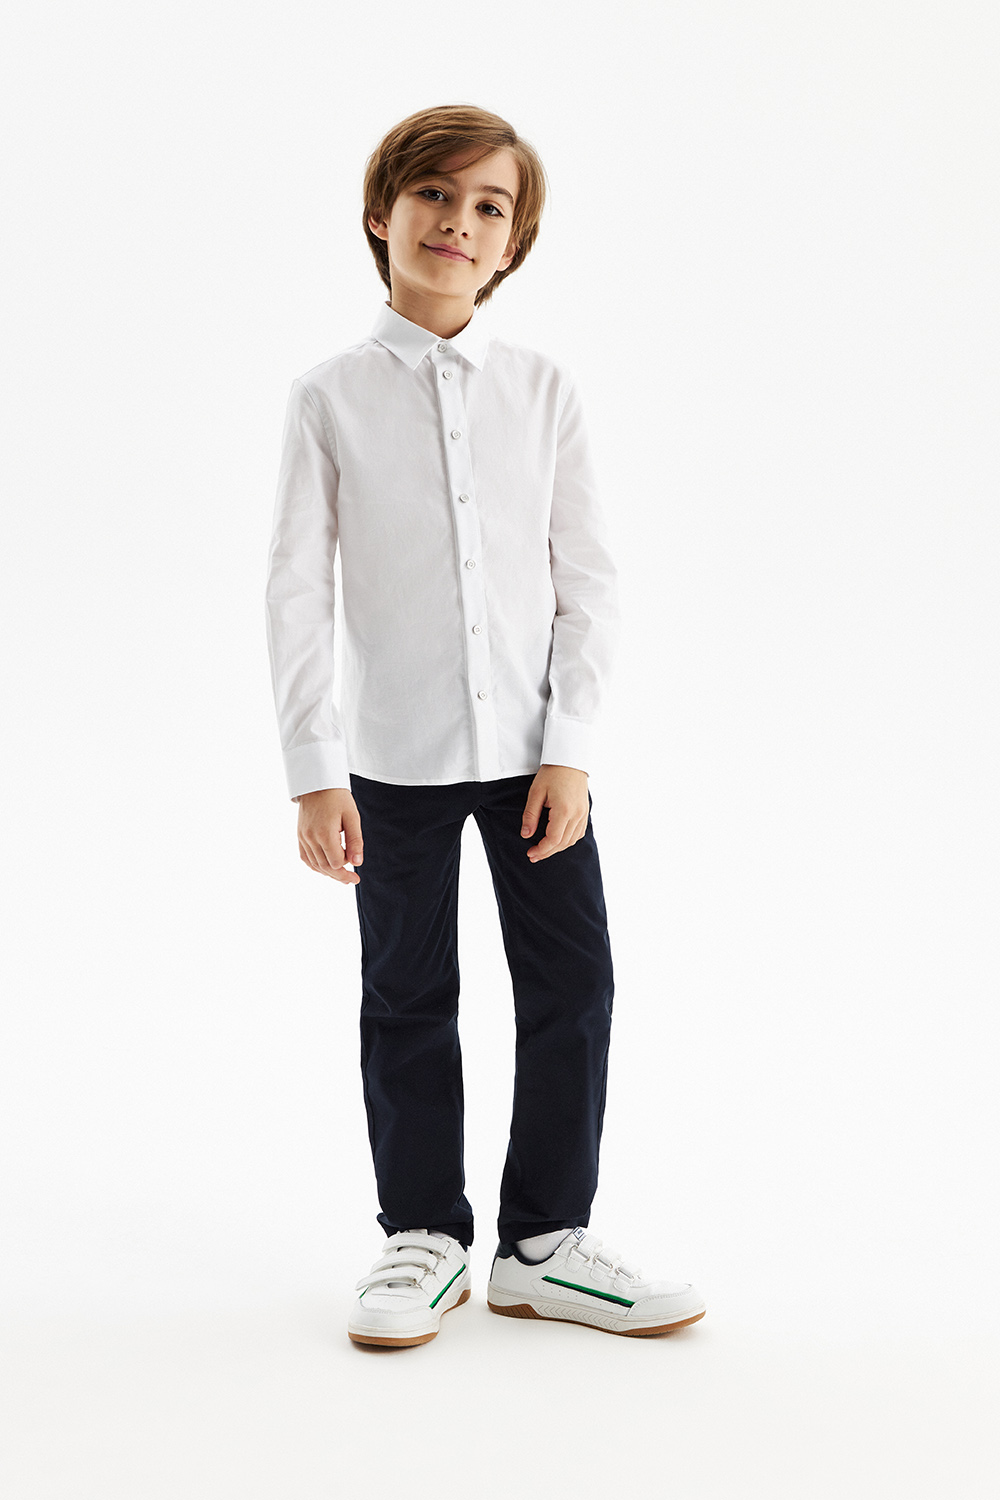 Хлопковая сорочка Comfort с трикотажной спинкой на кнопках (SSFSB-328-14855-219) Silver spoon